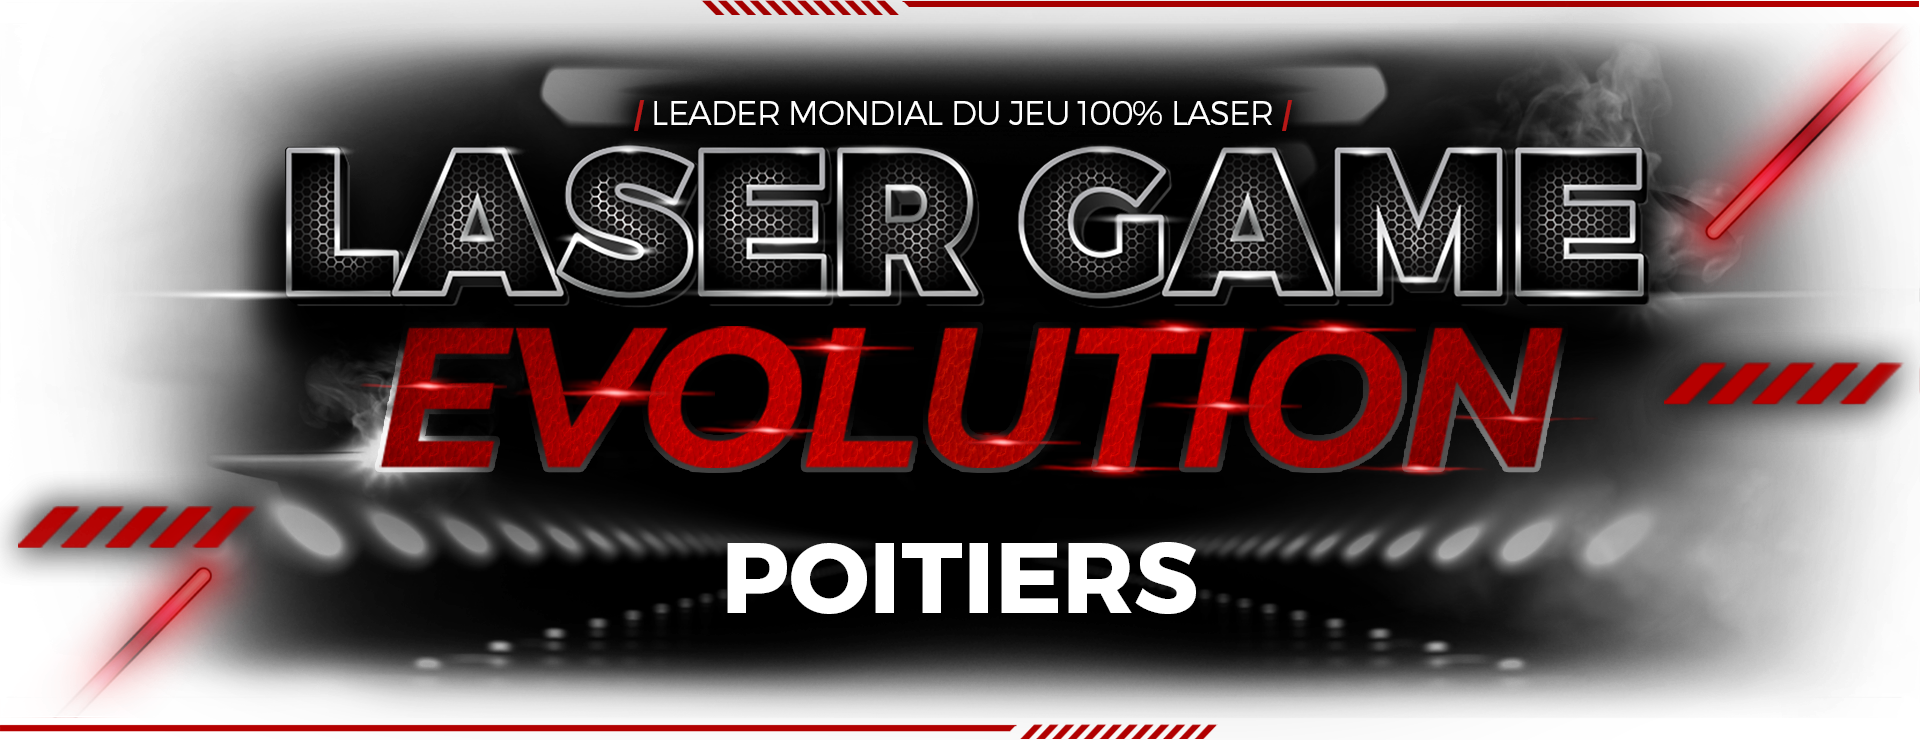 Laser Game Evolution Poitiers Sud - Faites comme Théo, venez fêter